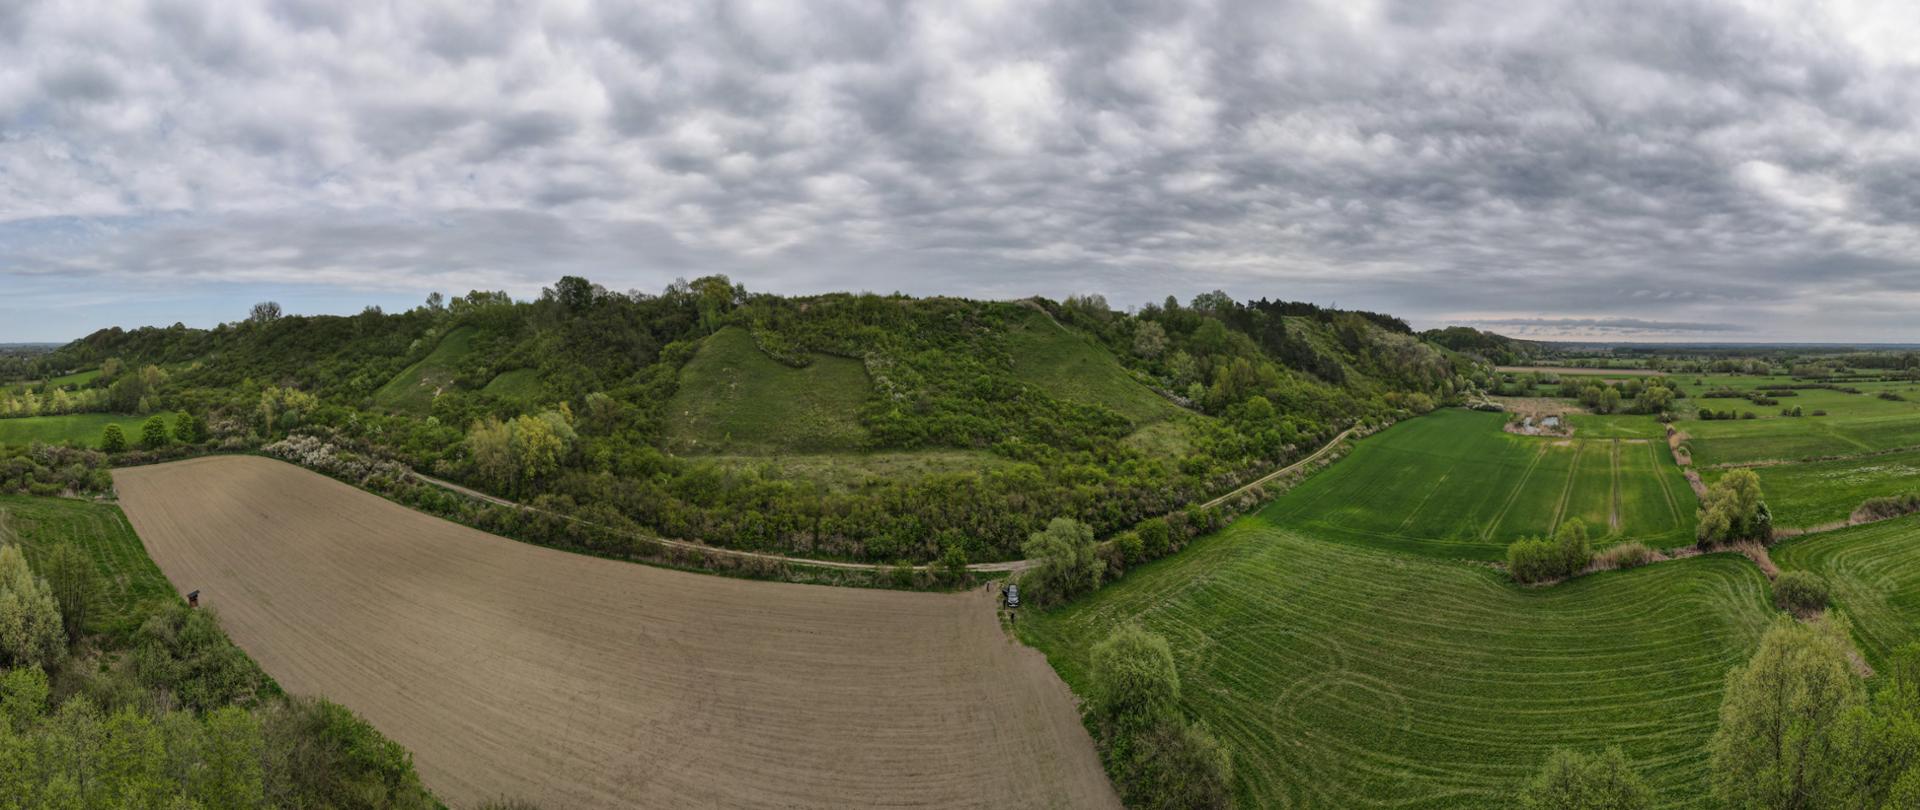 Zbocza Płutowskie - widok na skarpy porośnięte roślinnością zielną i zakrzewieniami w rezerwacie przyrody Zbocza Płutowskie.